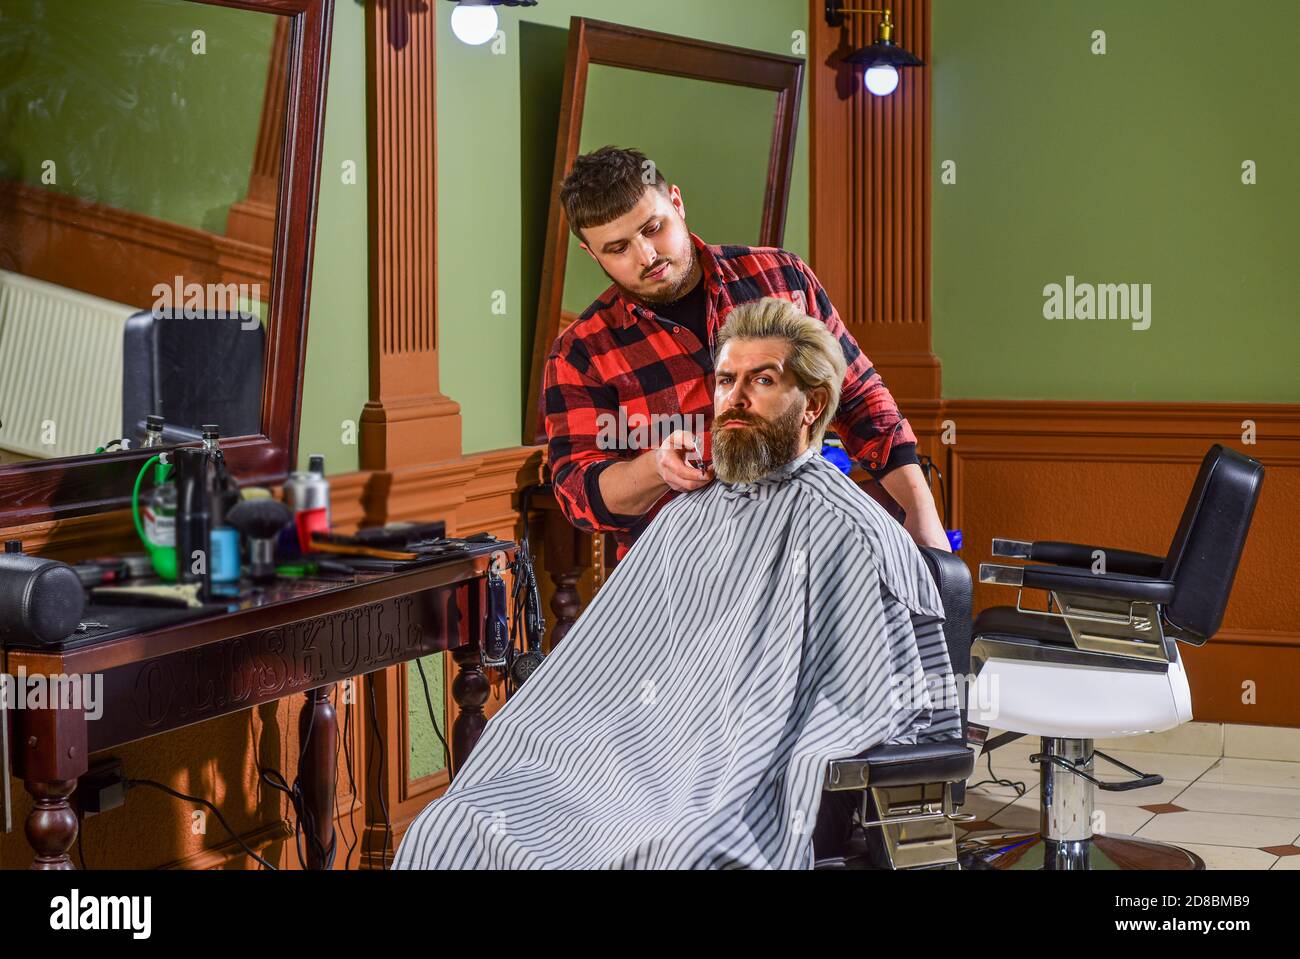 Hombre cliente sentarse silla. Servicios de peluquería. Como caballero y  ser humano decente, debes dar propina a tu barbero. Visita peluquería.  Mantener la forma. Peluquería. Cliente de barbershop. Recortando la barba  Fotografía